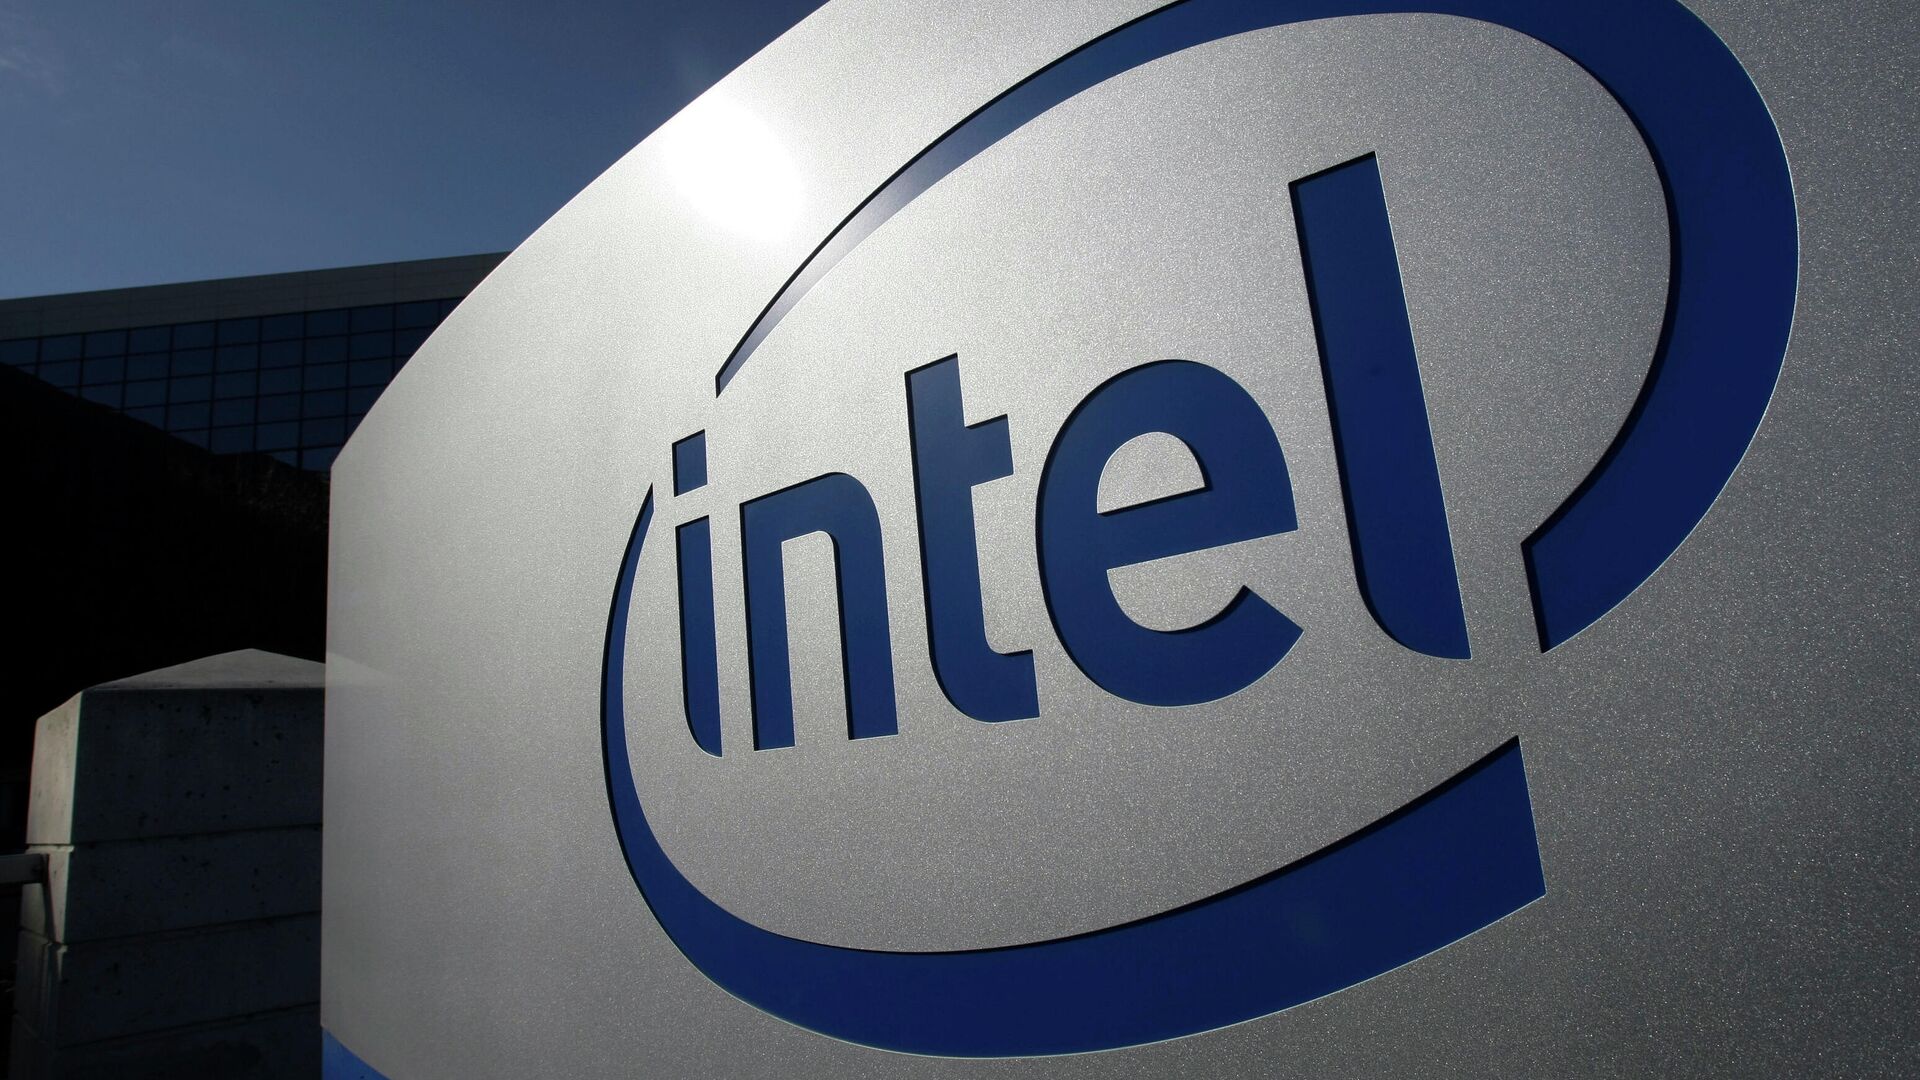 В Intel случайно рассекретили процессоры и видеокарты из будущего